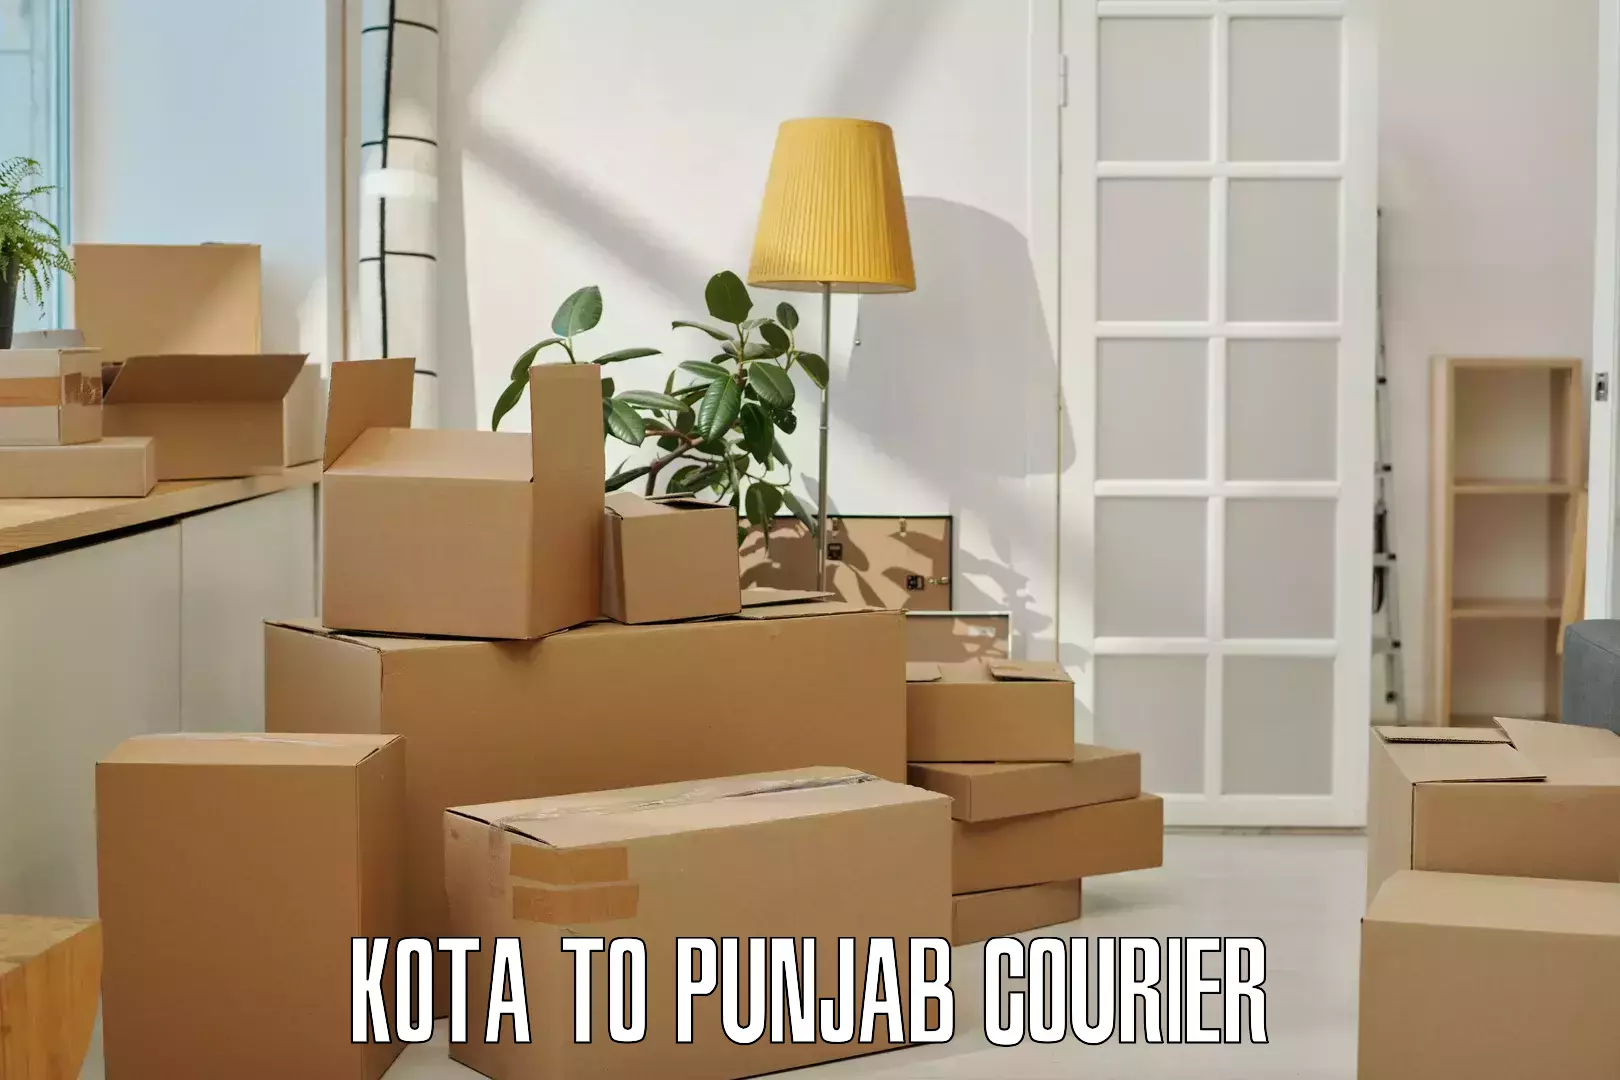 Same-day delivery options Kota to Punjab